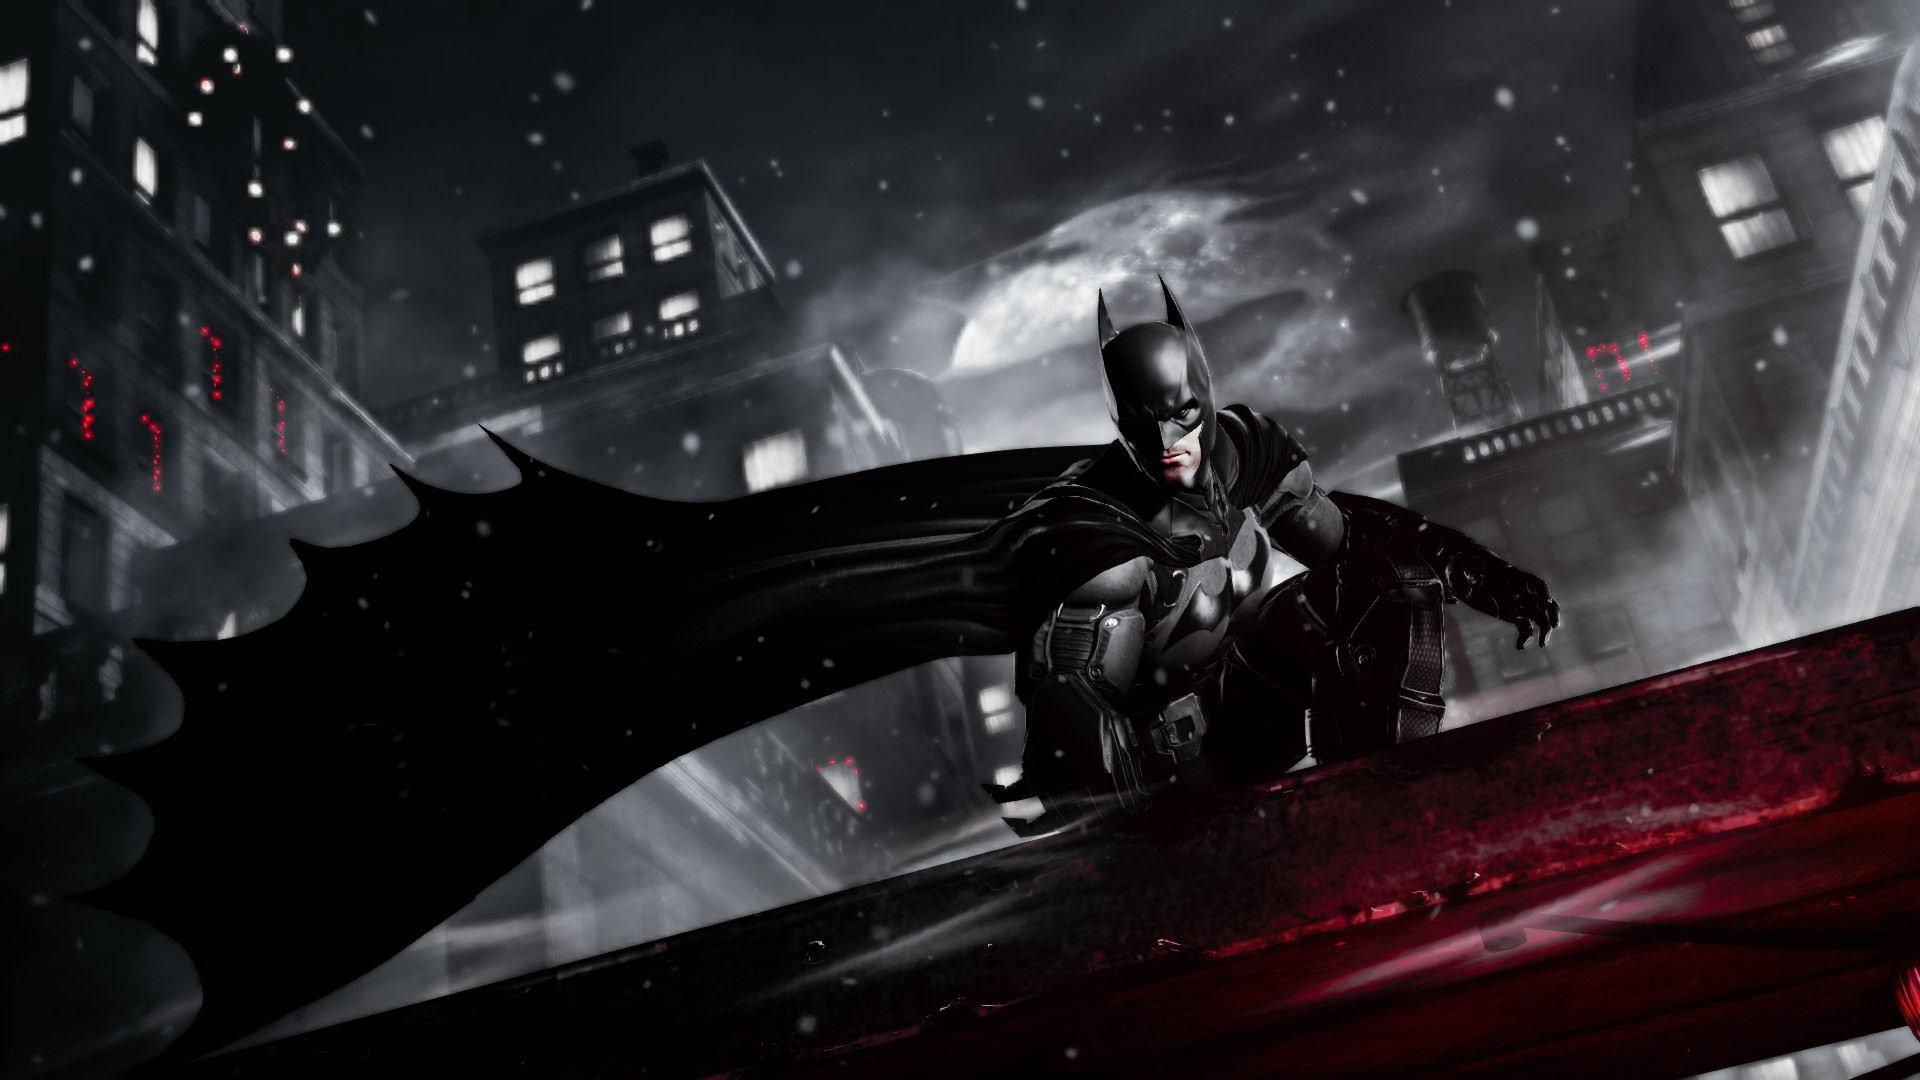 Batman: Arkham Origins wallpaper 1920x1080 Full HD (1080p) desktop